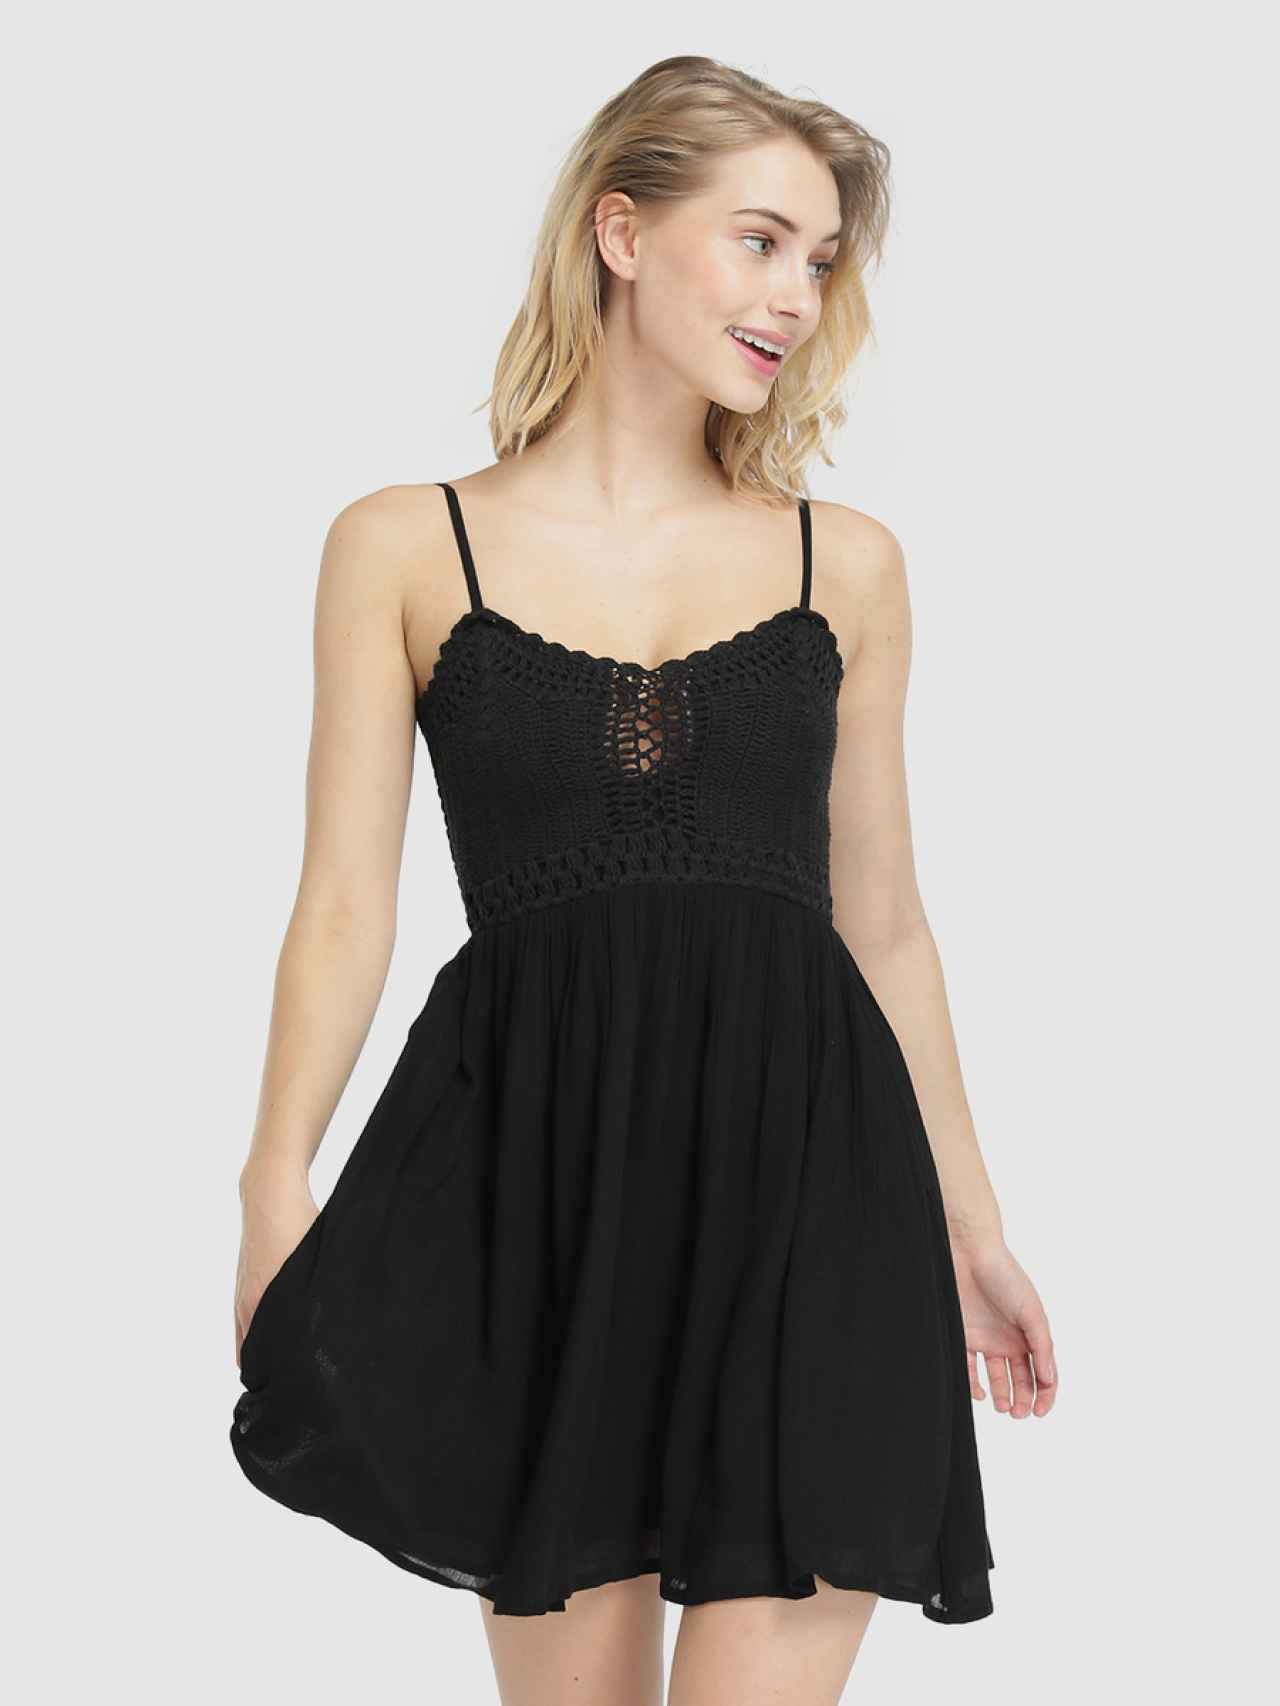 clásico mini vestido negro se reinventa: lentejuelas, encaje y